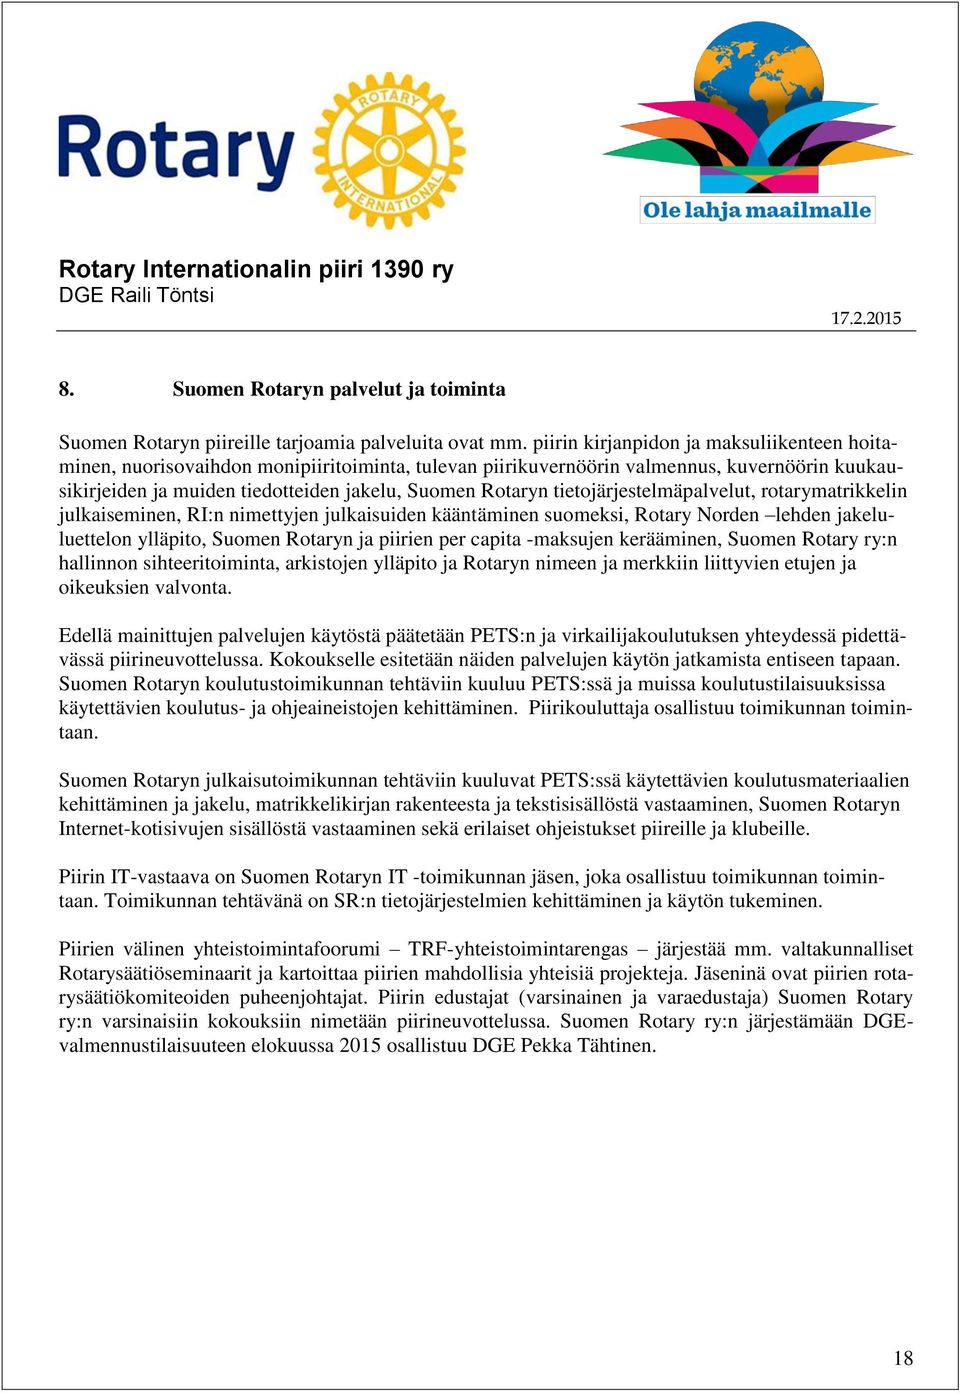 tietojärjestelmäpalvelut, rotarymatrikkelin julkaiseminen, RI:n nimettyjen julkaisuiden kääntäminen suomeksi, Rotary Norden lehden jakeluluettelon ylläpito, Suomen Rotaryn ja piirien per capita